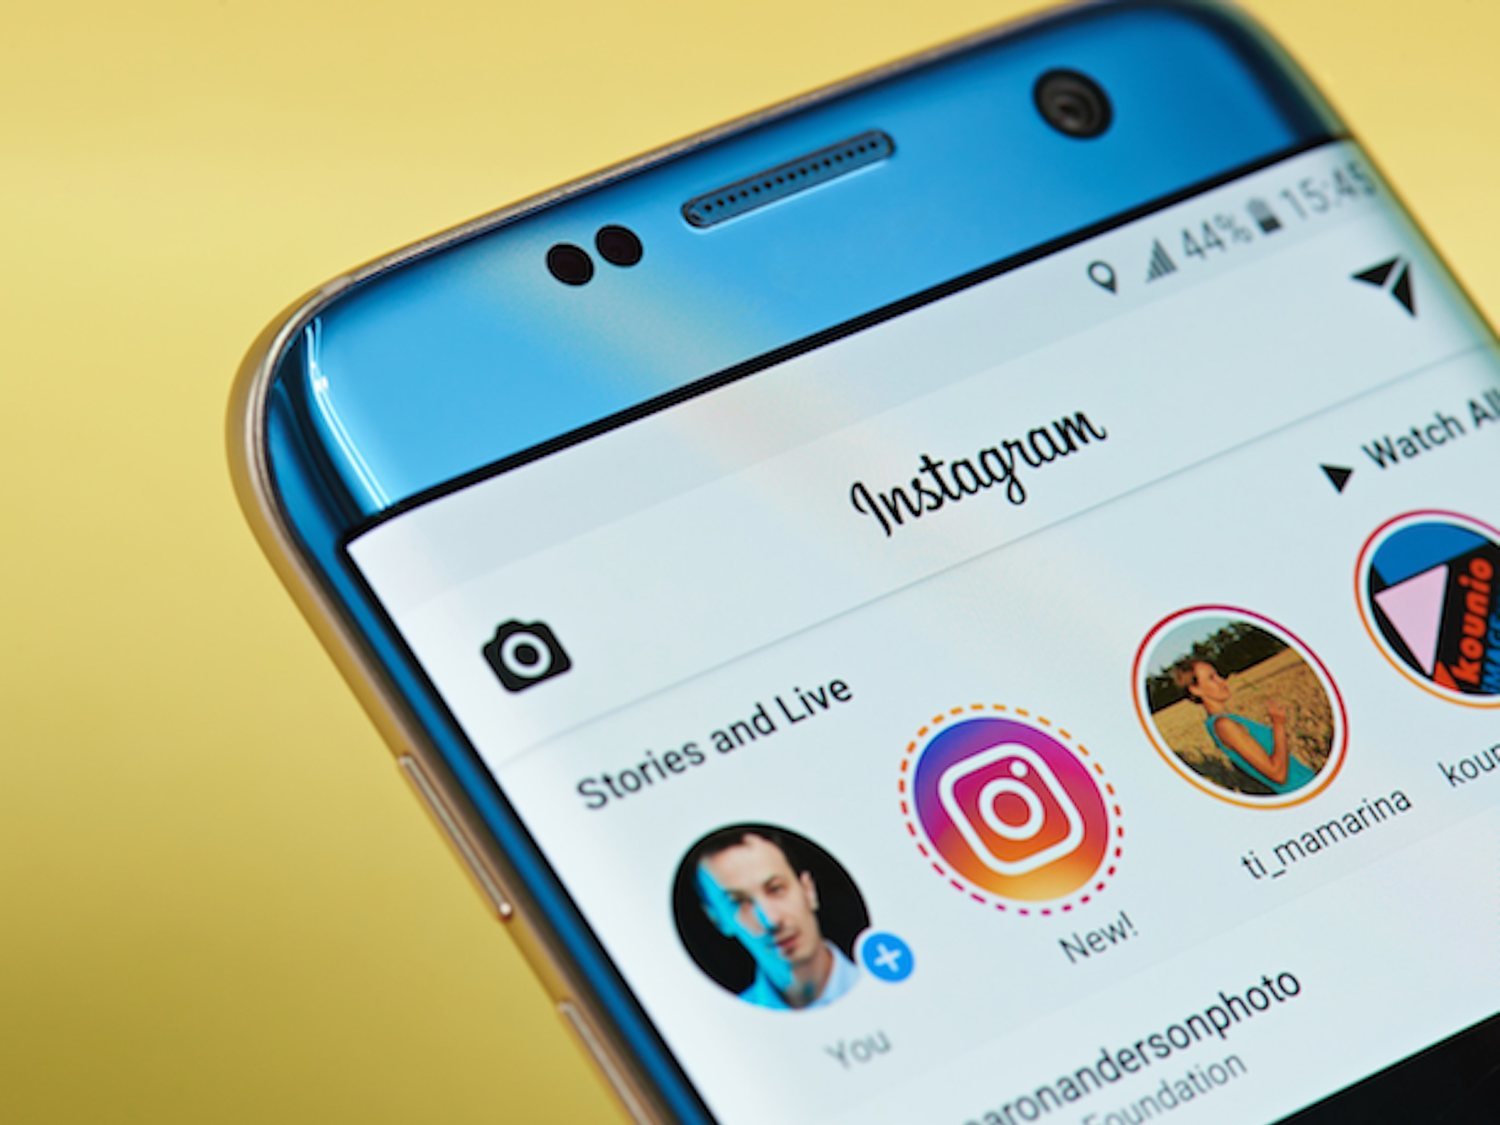 Los verdaderos trucos para saber quién ha visitado tu perfil de Instagram